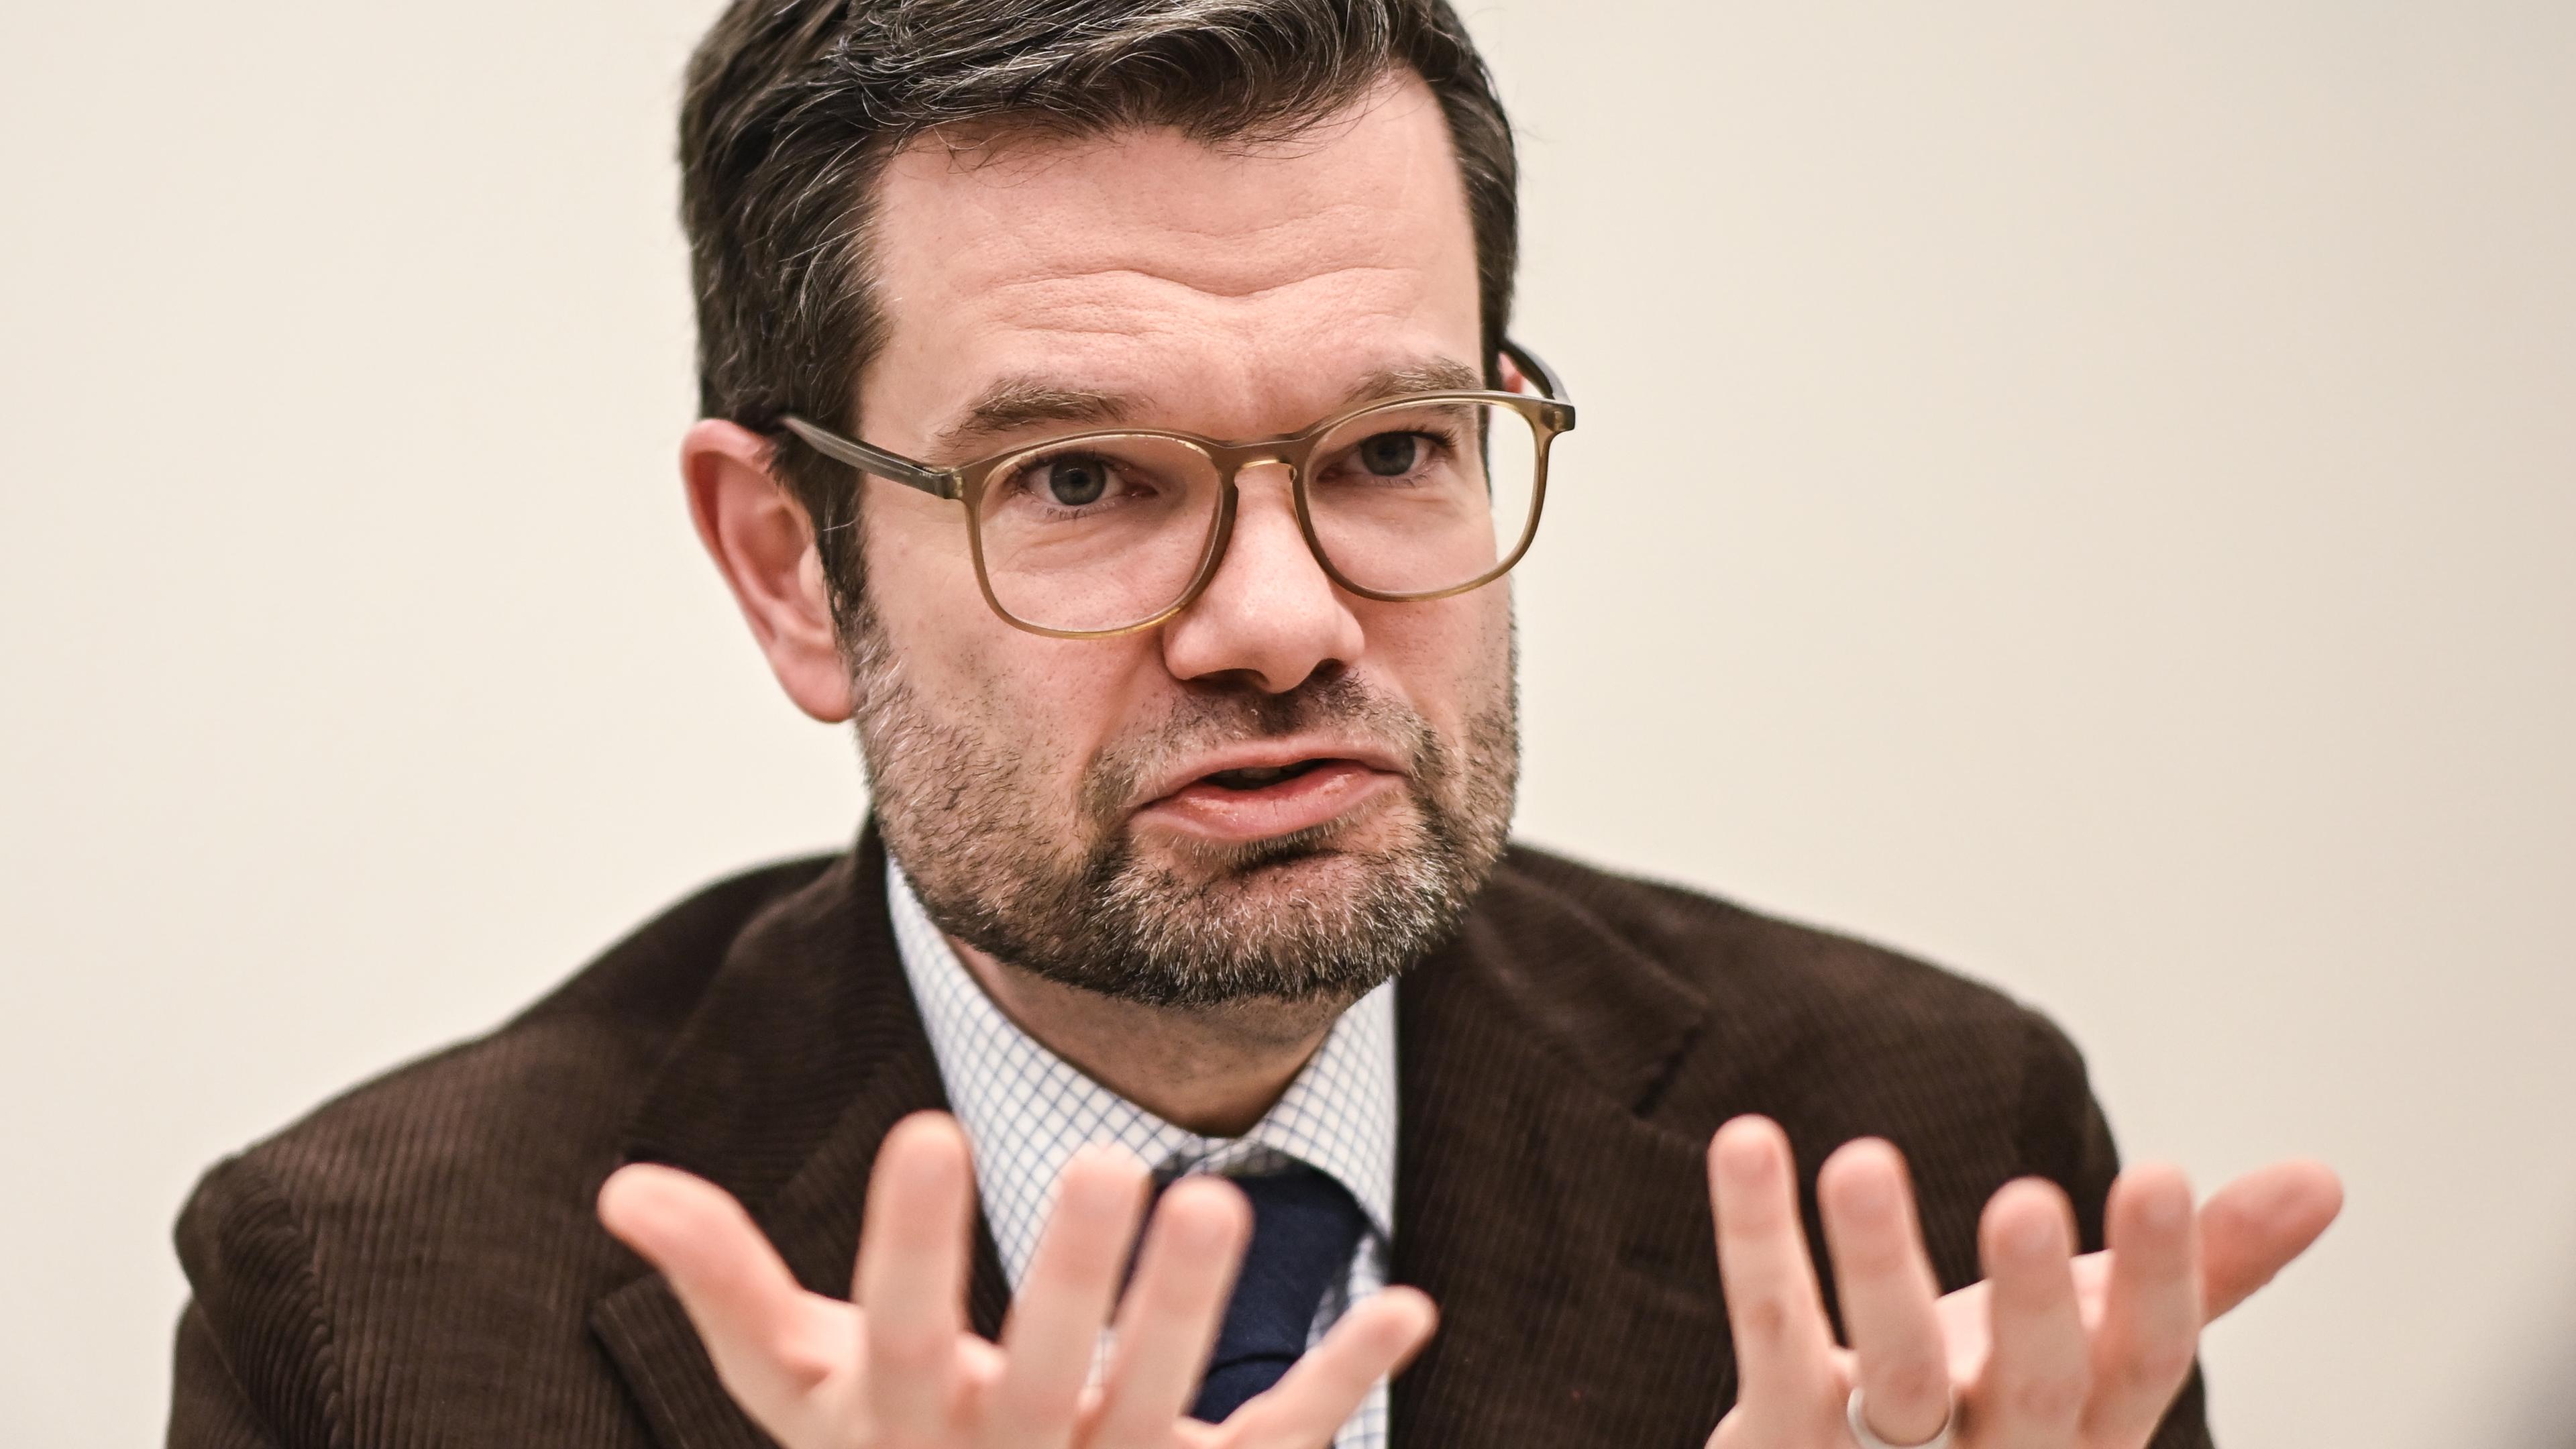  Marco Buschmann (FDP), Bundesminister der Justiz, gestikuliert bei einem Interview.